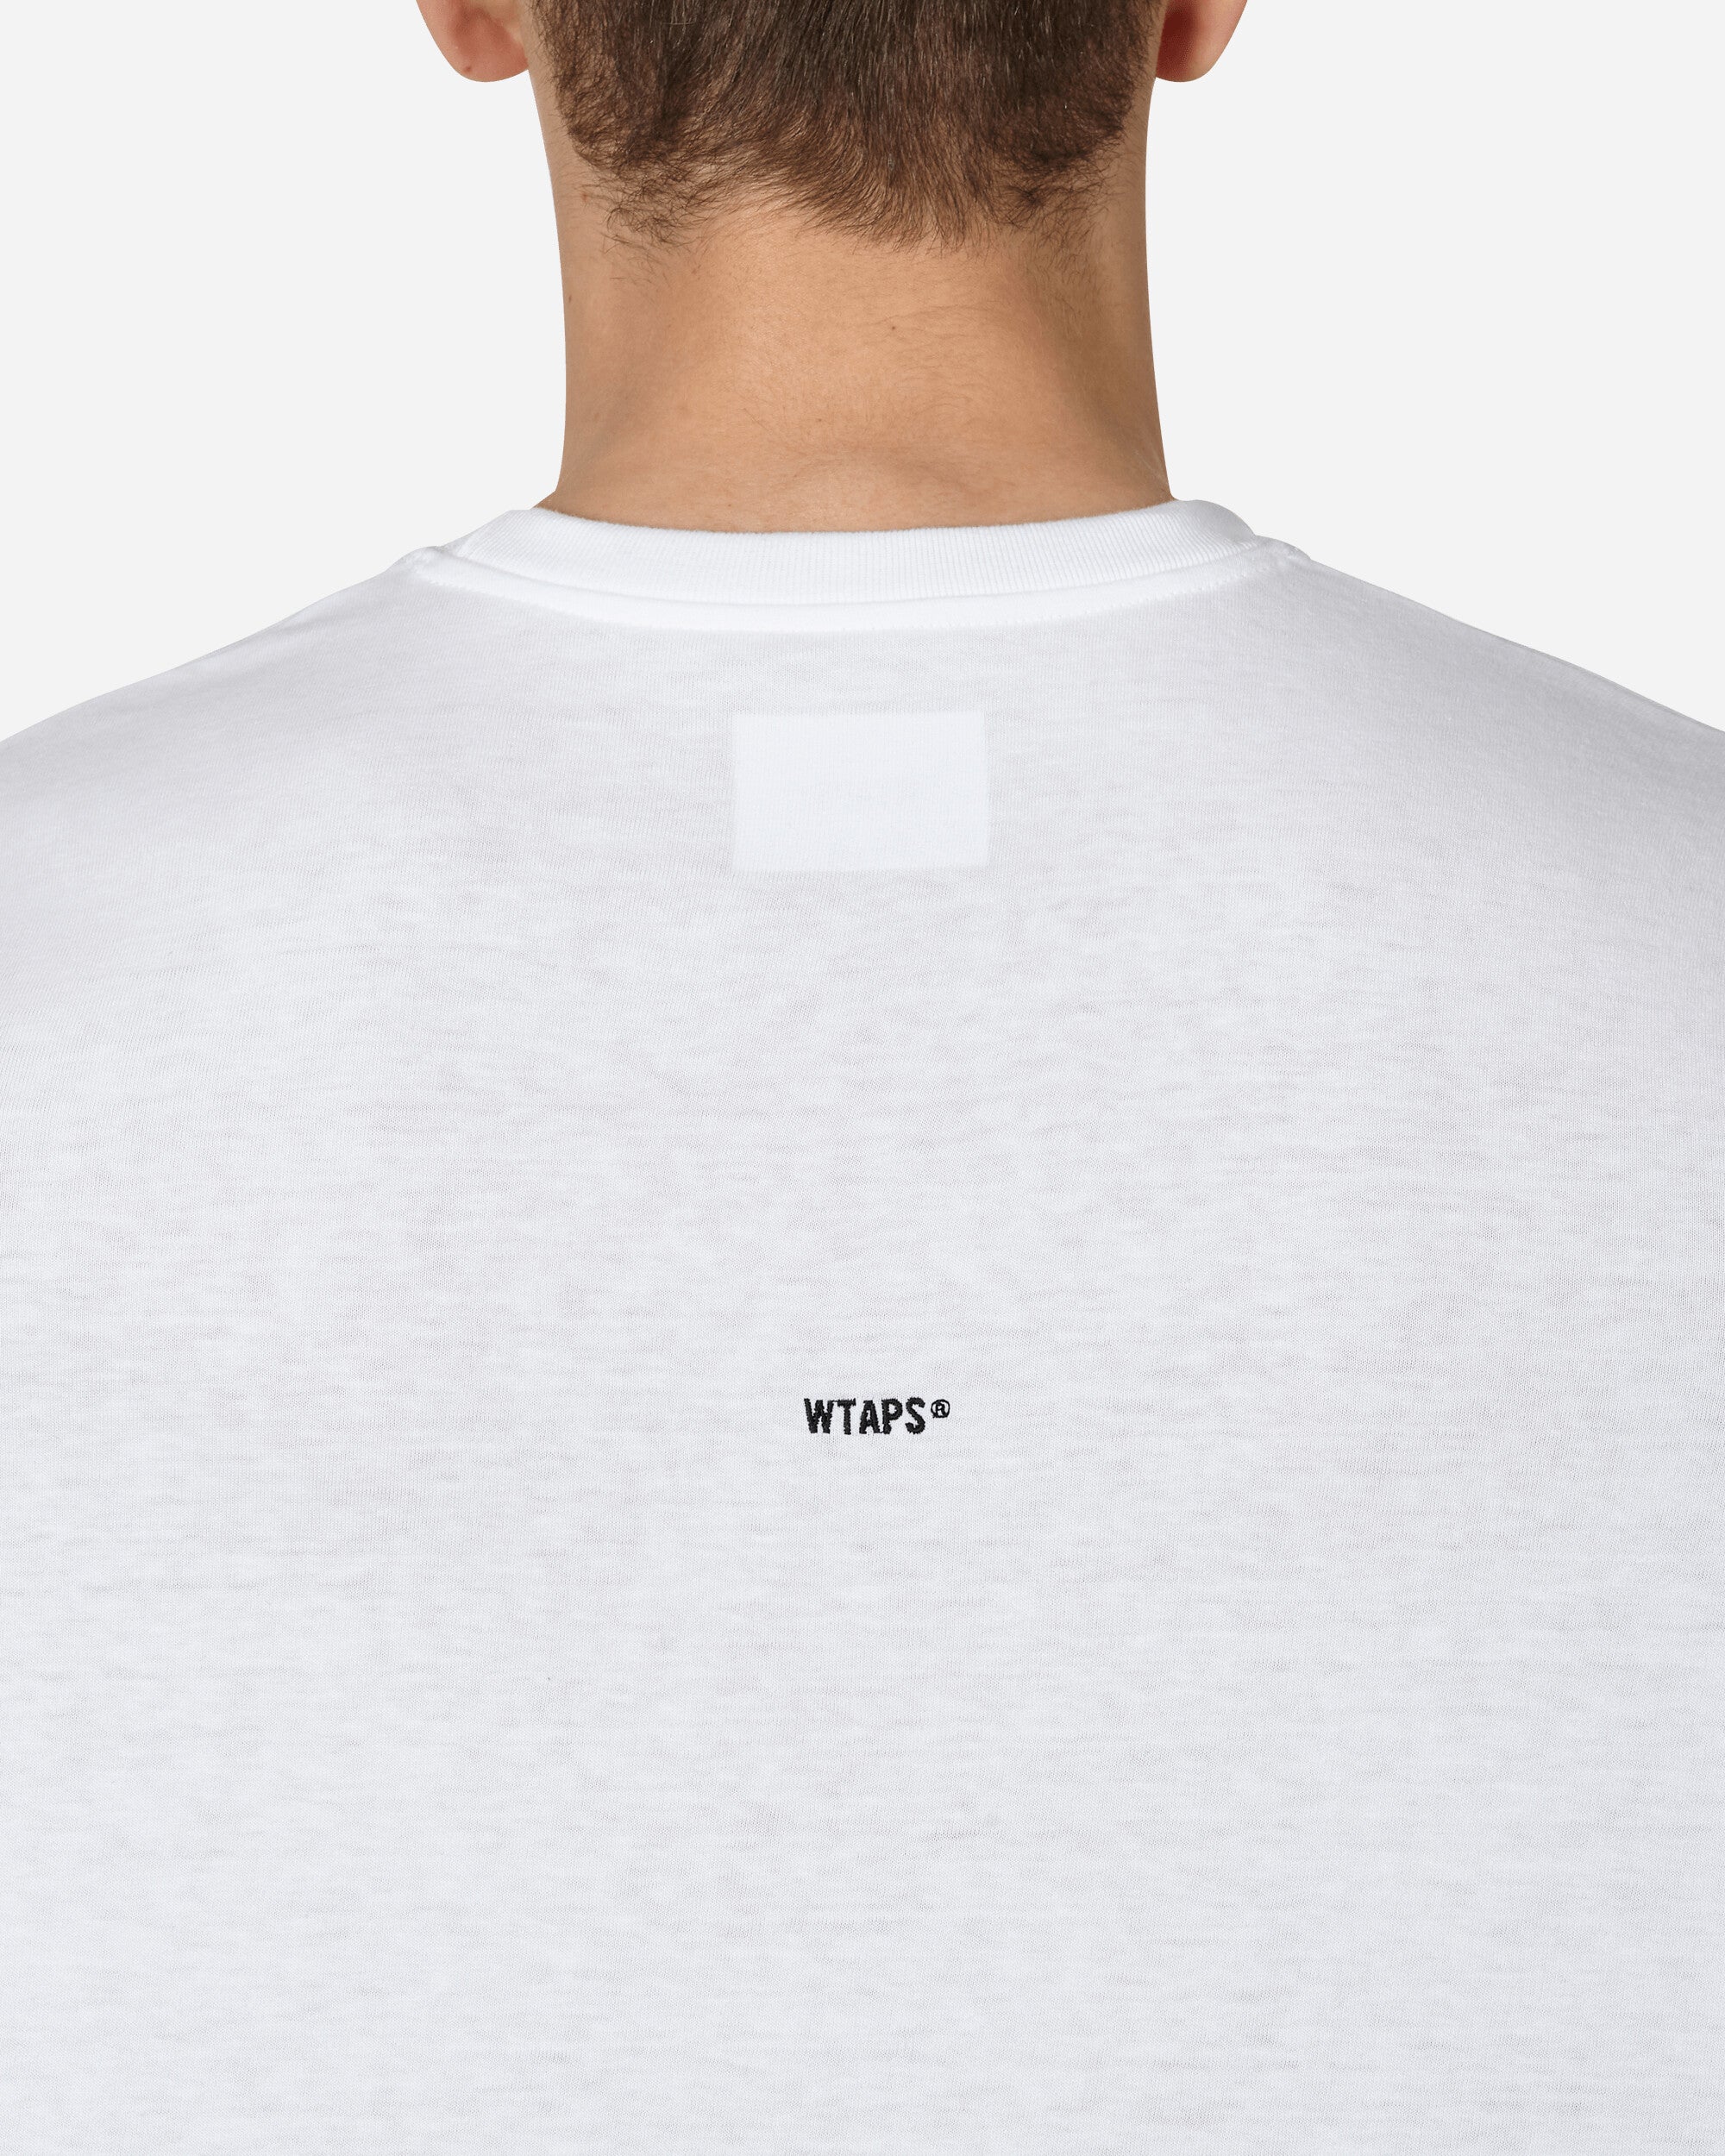 WTAPS 08 Longsleeve T-Shirt White - Slam Jam Official Store